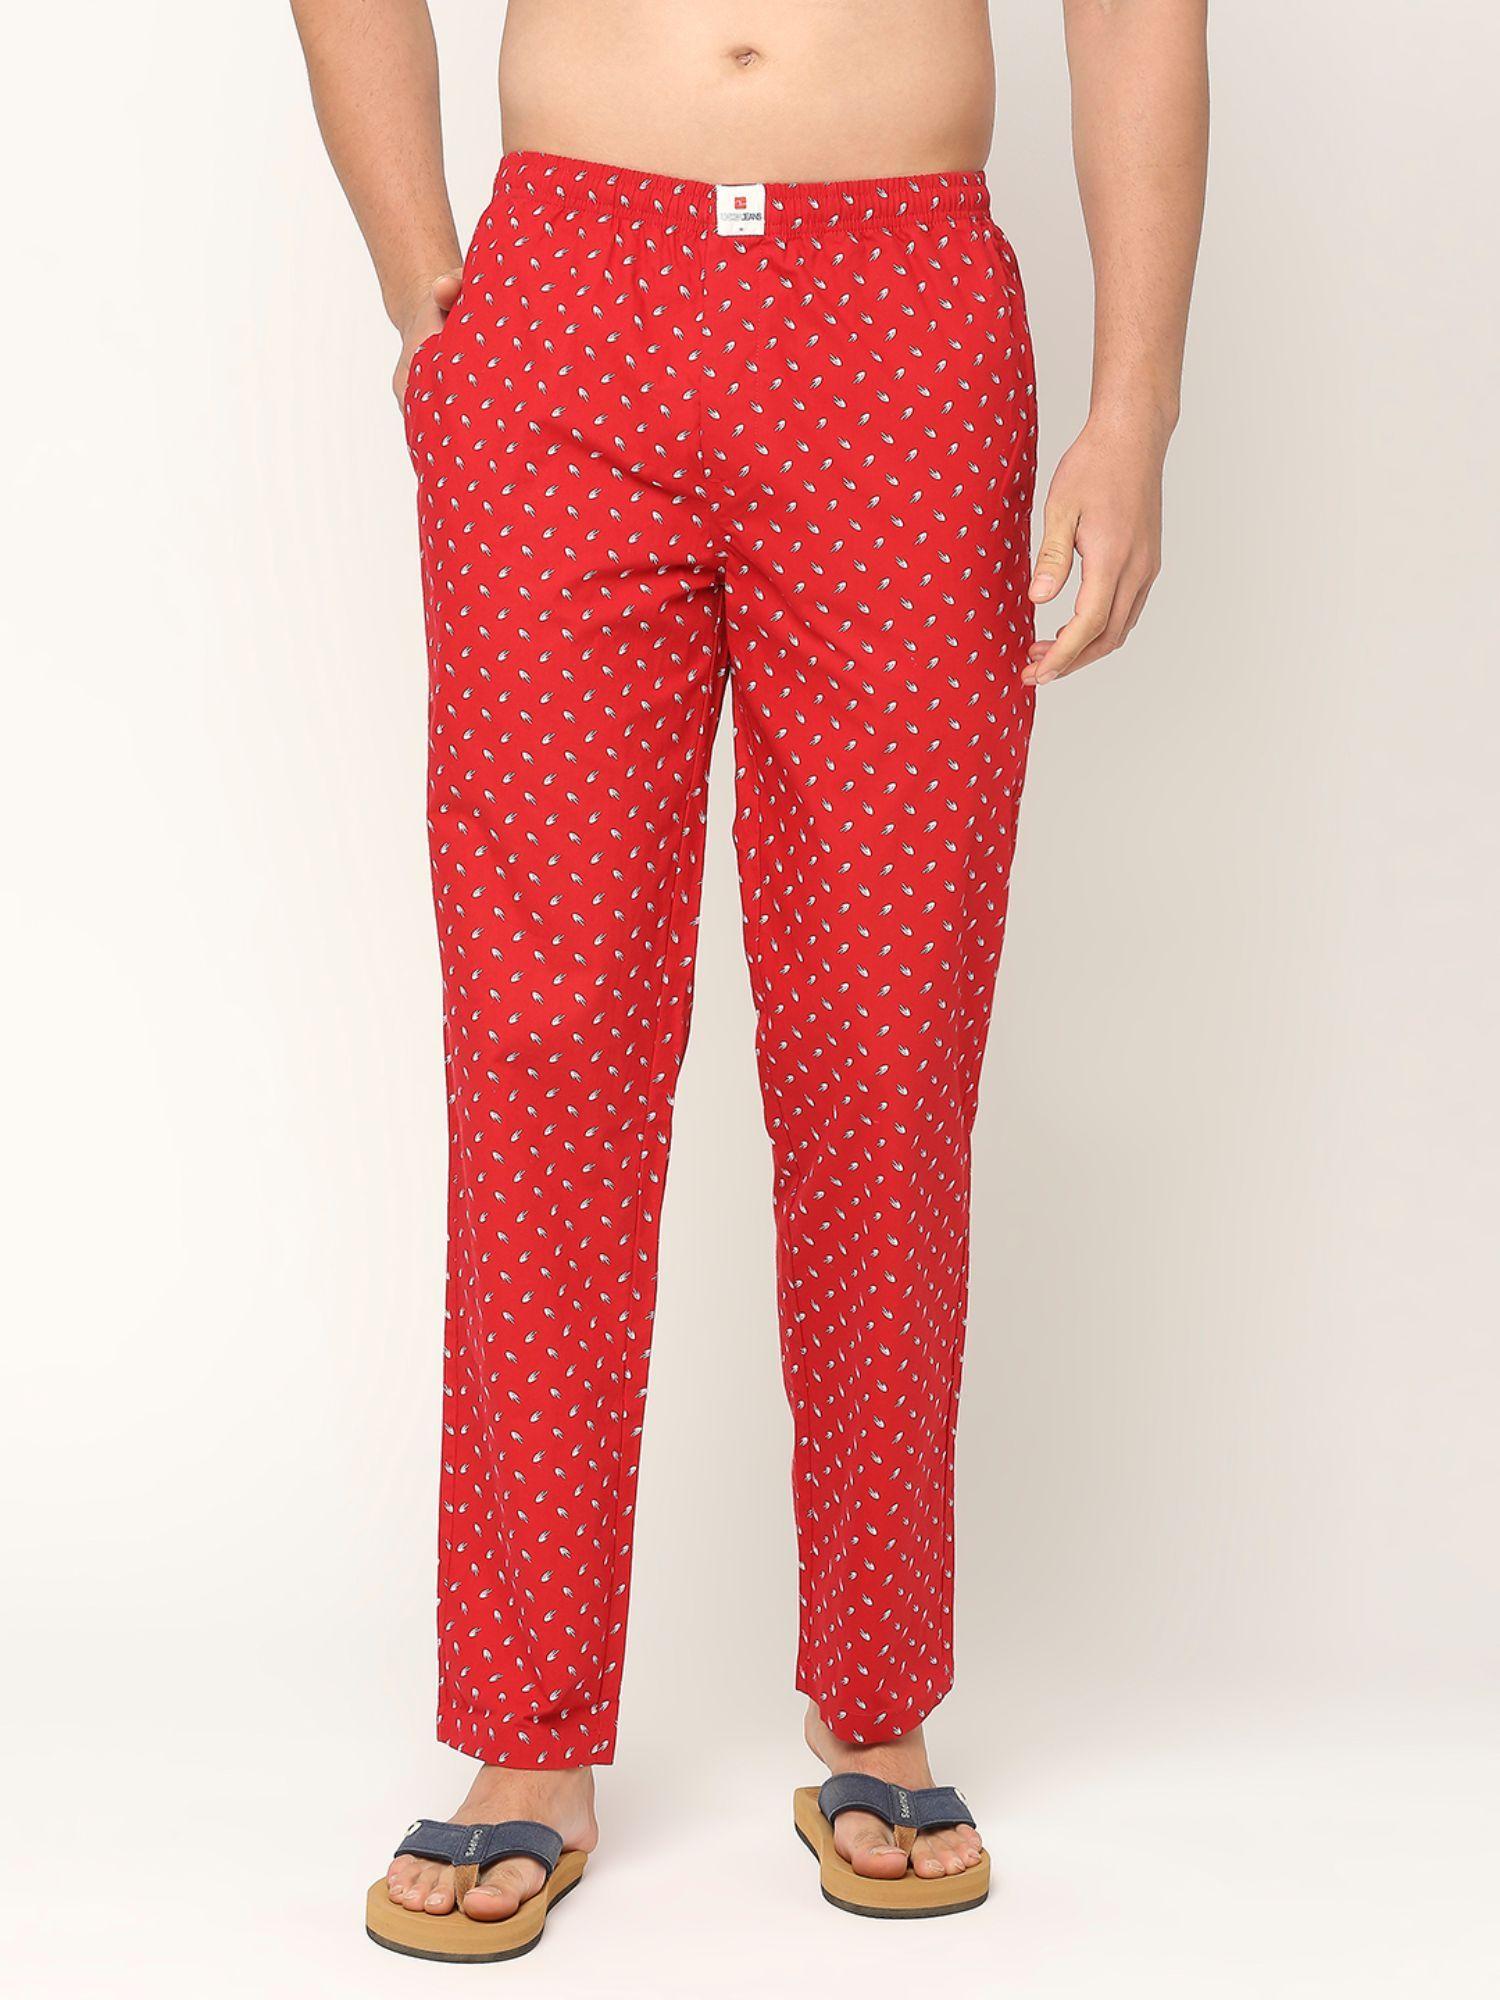 premium-cotton-printed-men-red-pyjama